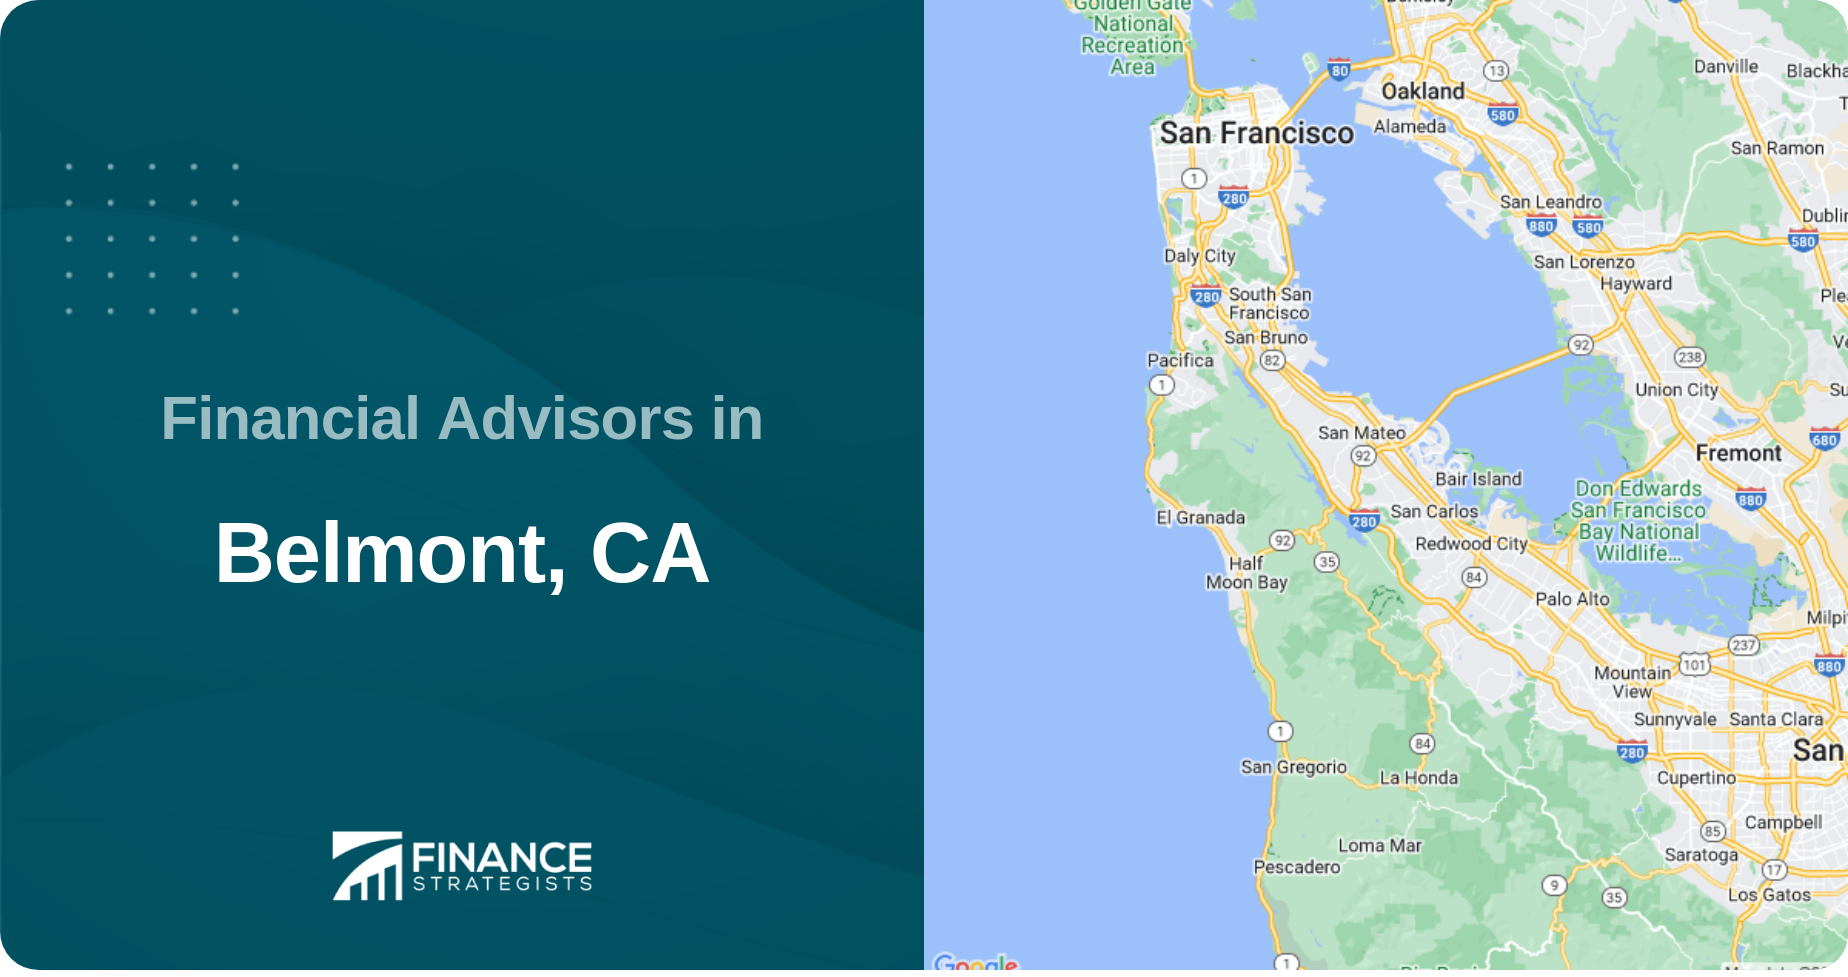 Financial Advisors in Belmont, CA